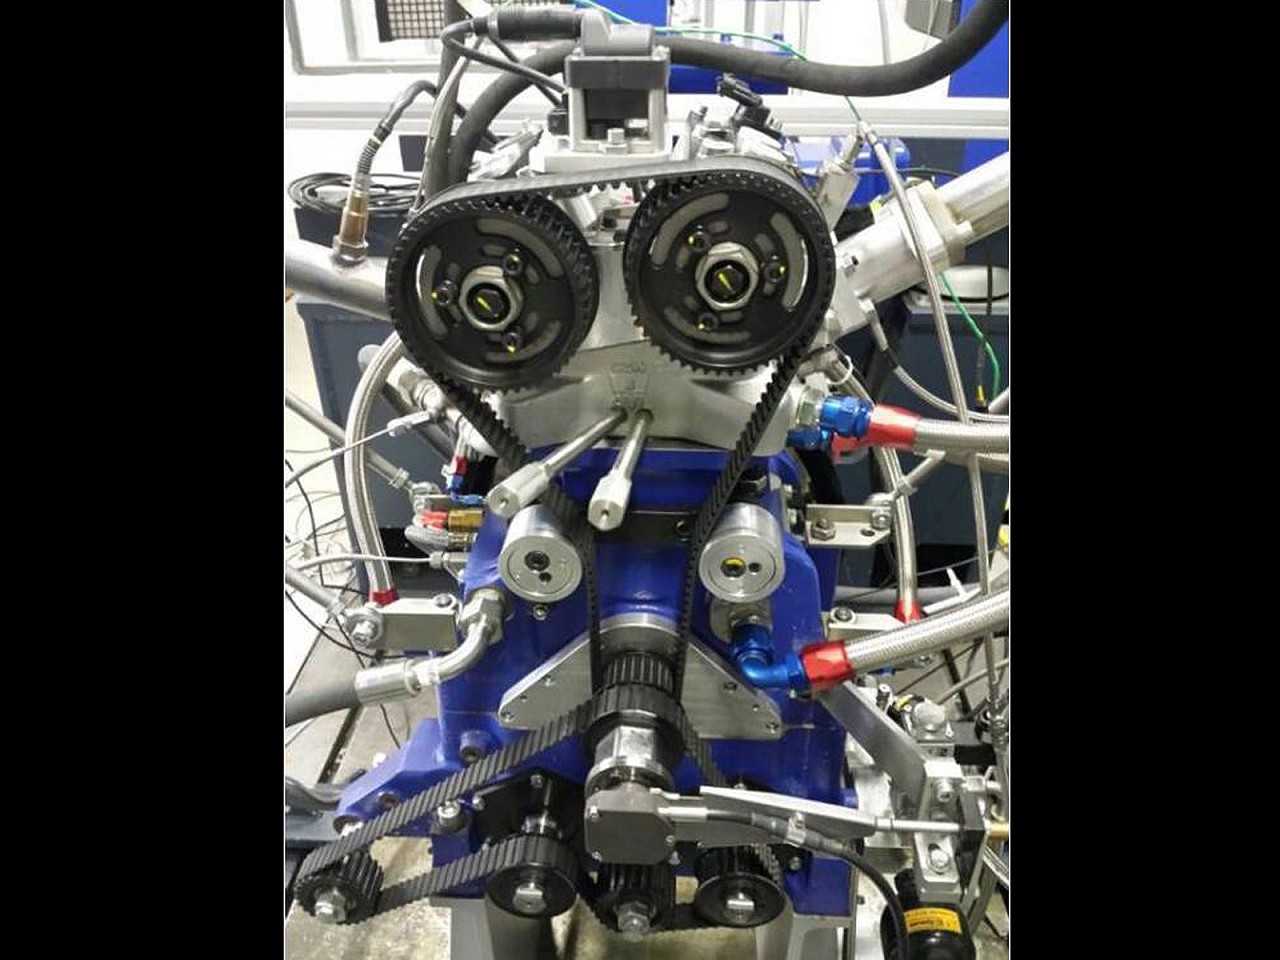 Acima o motor 1.0 de 185 cv desenvolvido pelos pesquisadores da UFMG